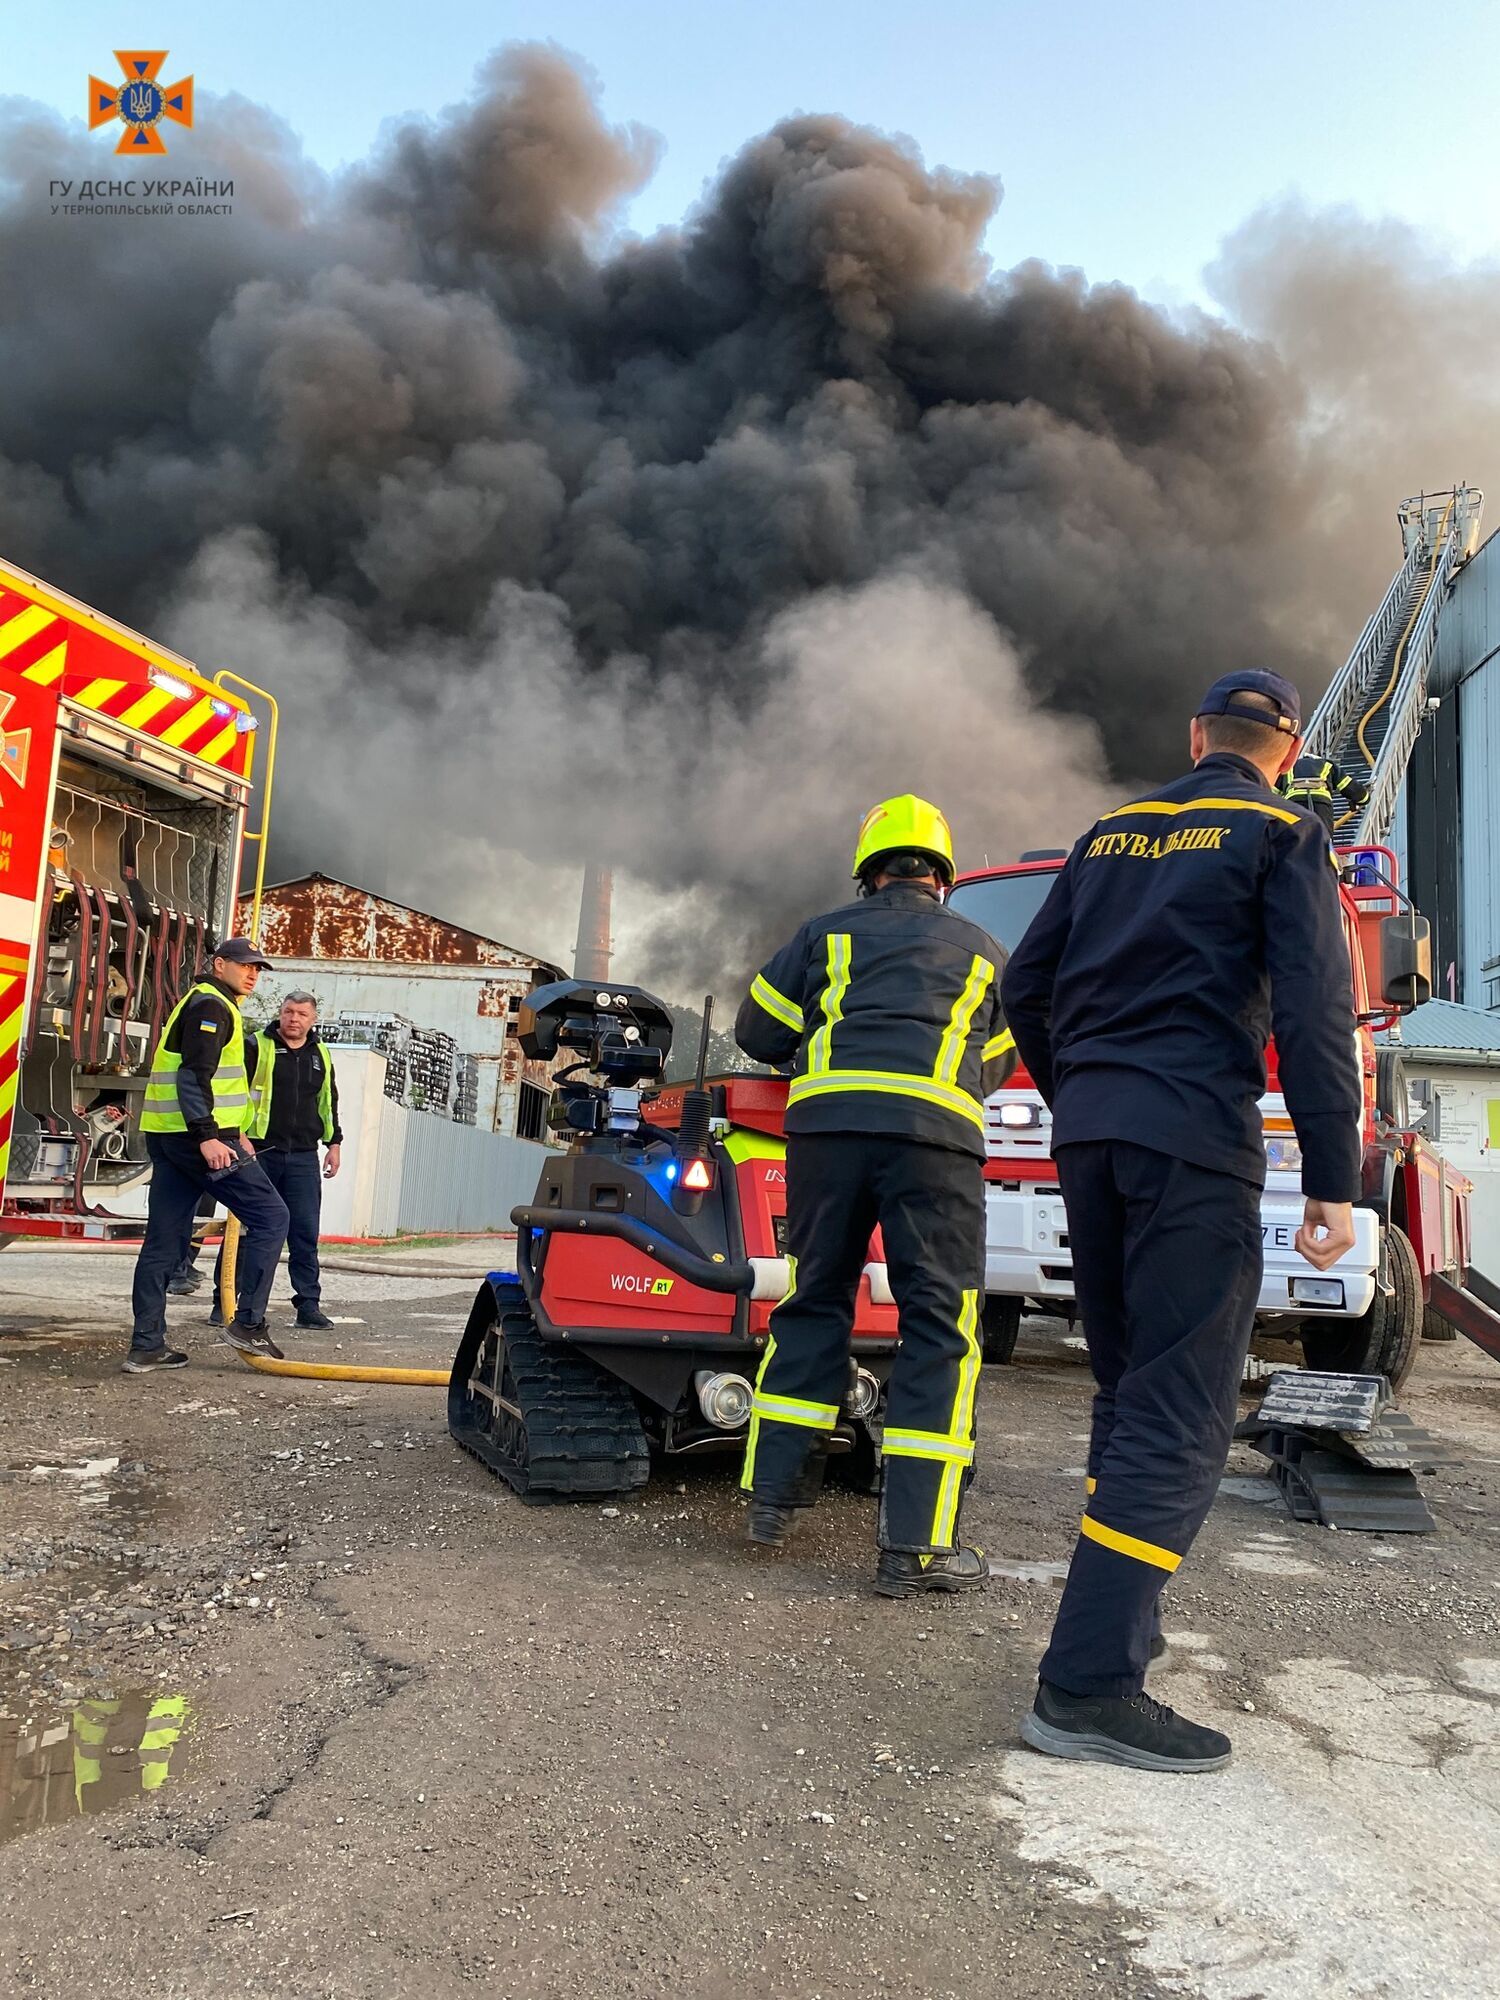 Пожар в Тернополе: в городе горел завод, предварительно речь идет о предприятии Penoboard